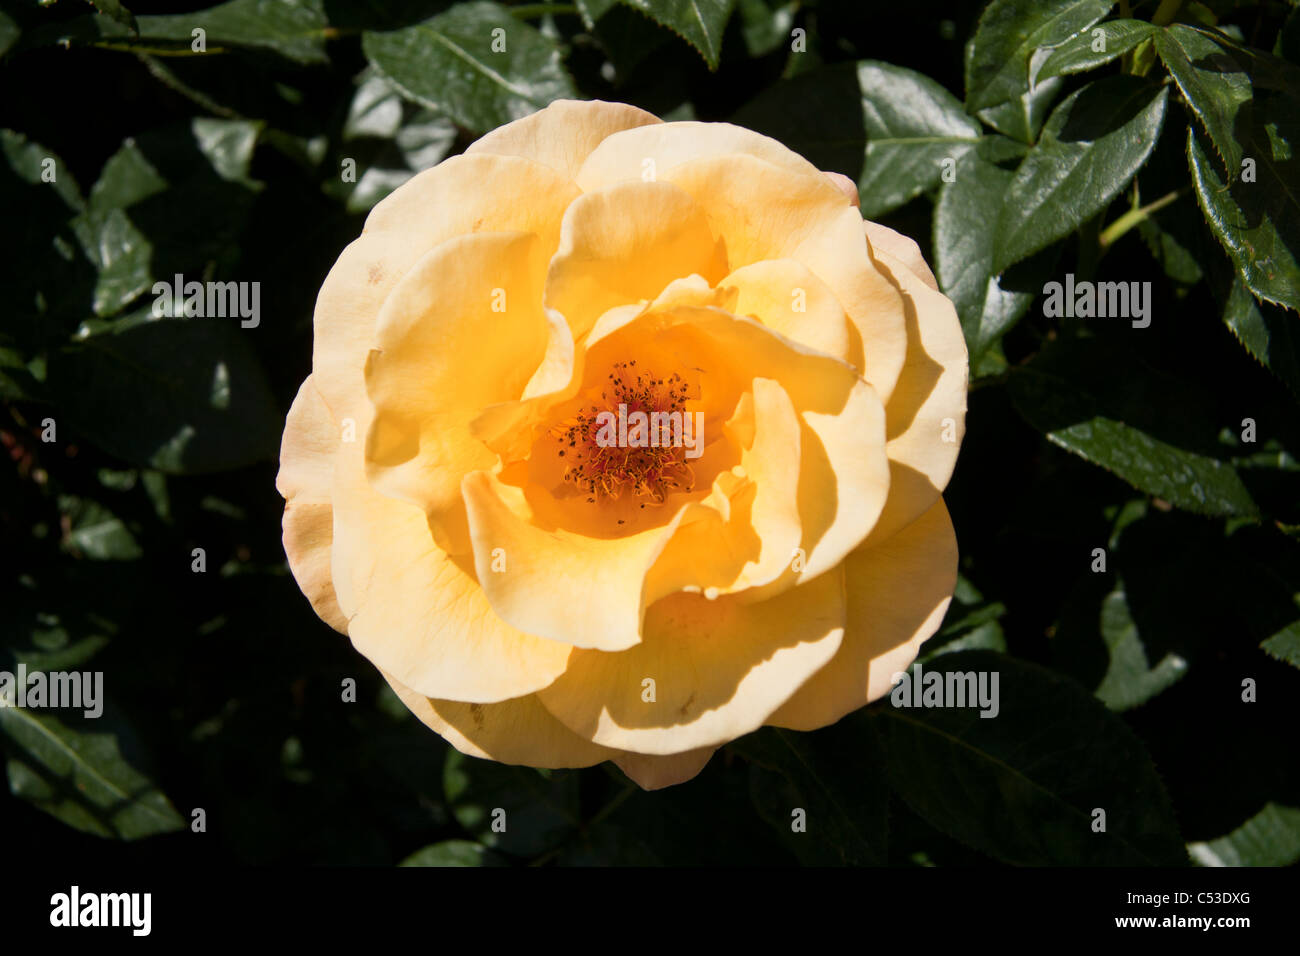 Yellow rose Stock Photo